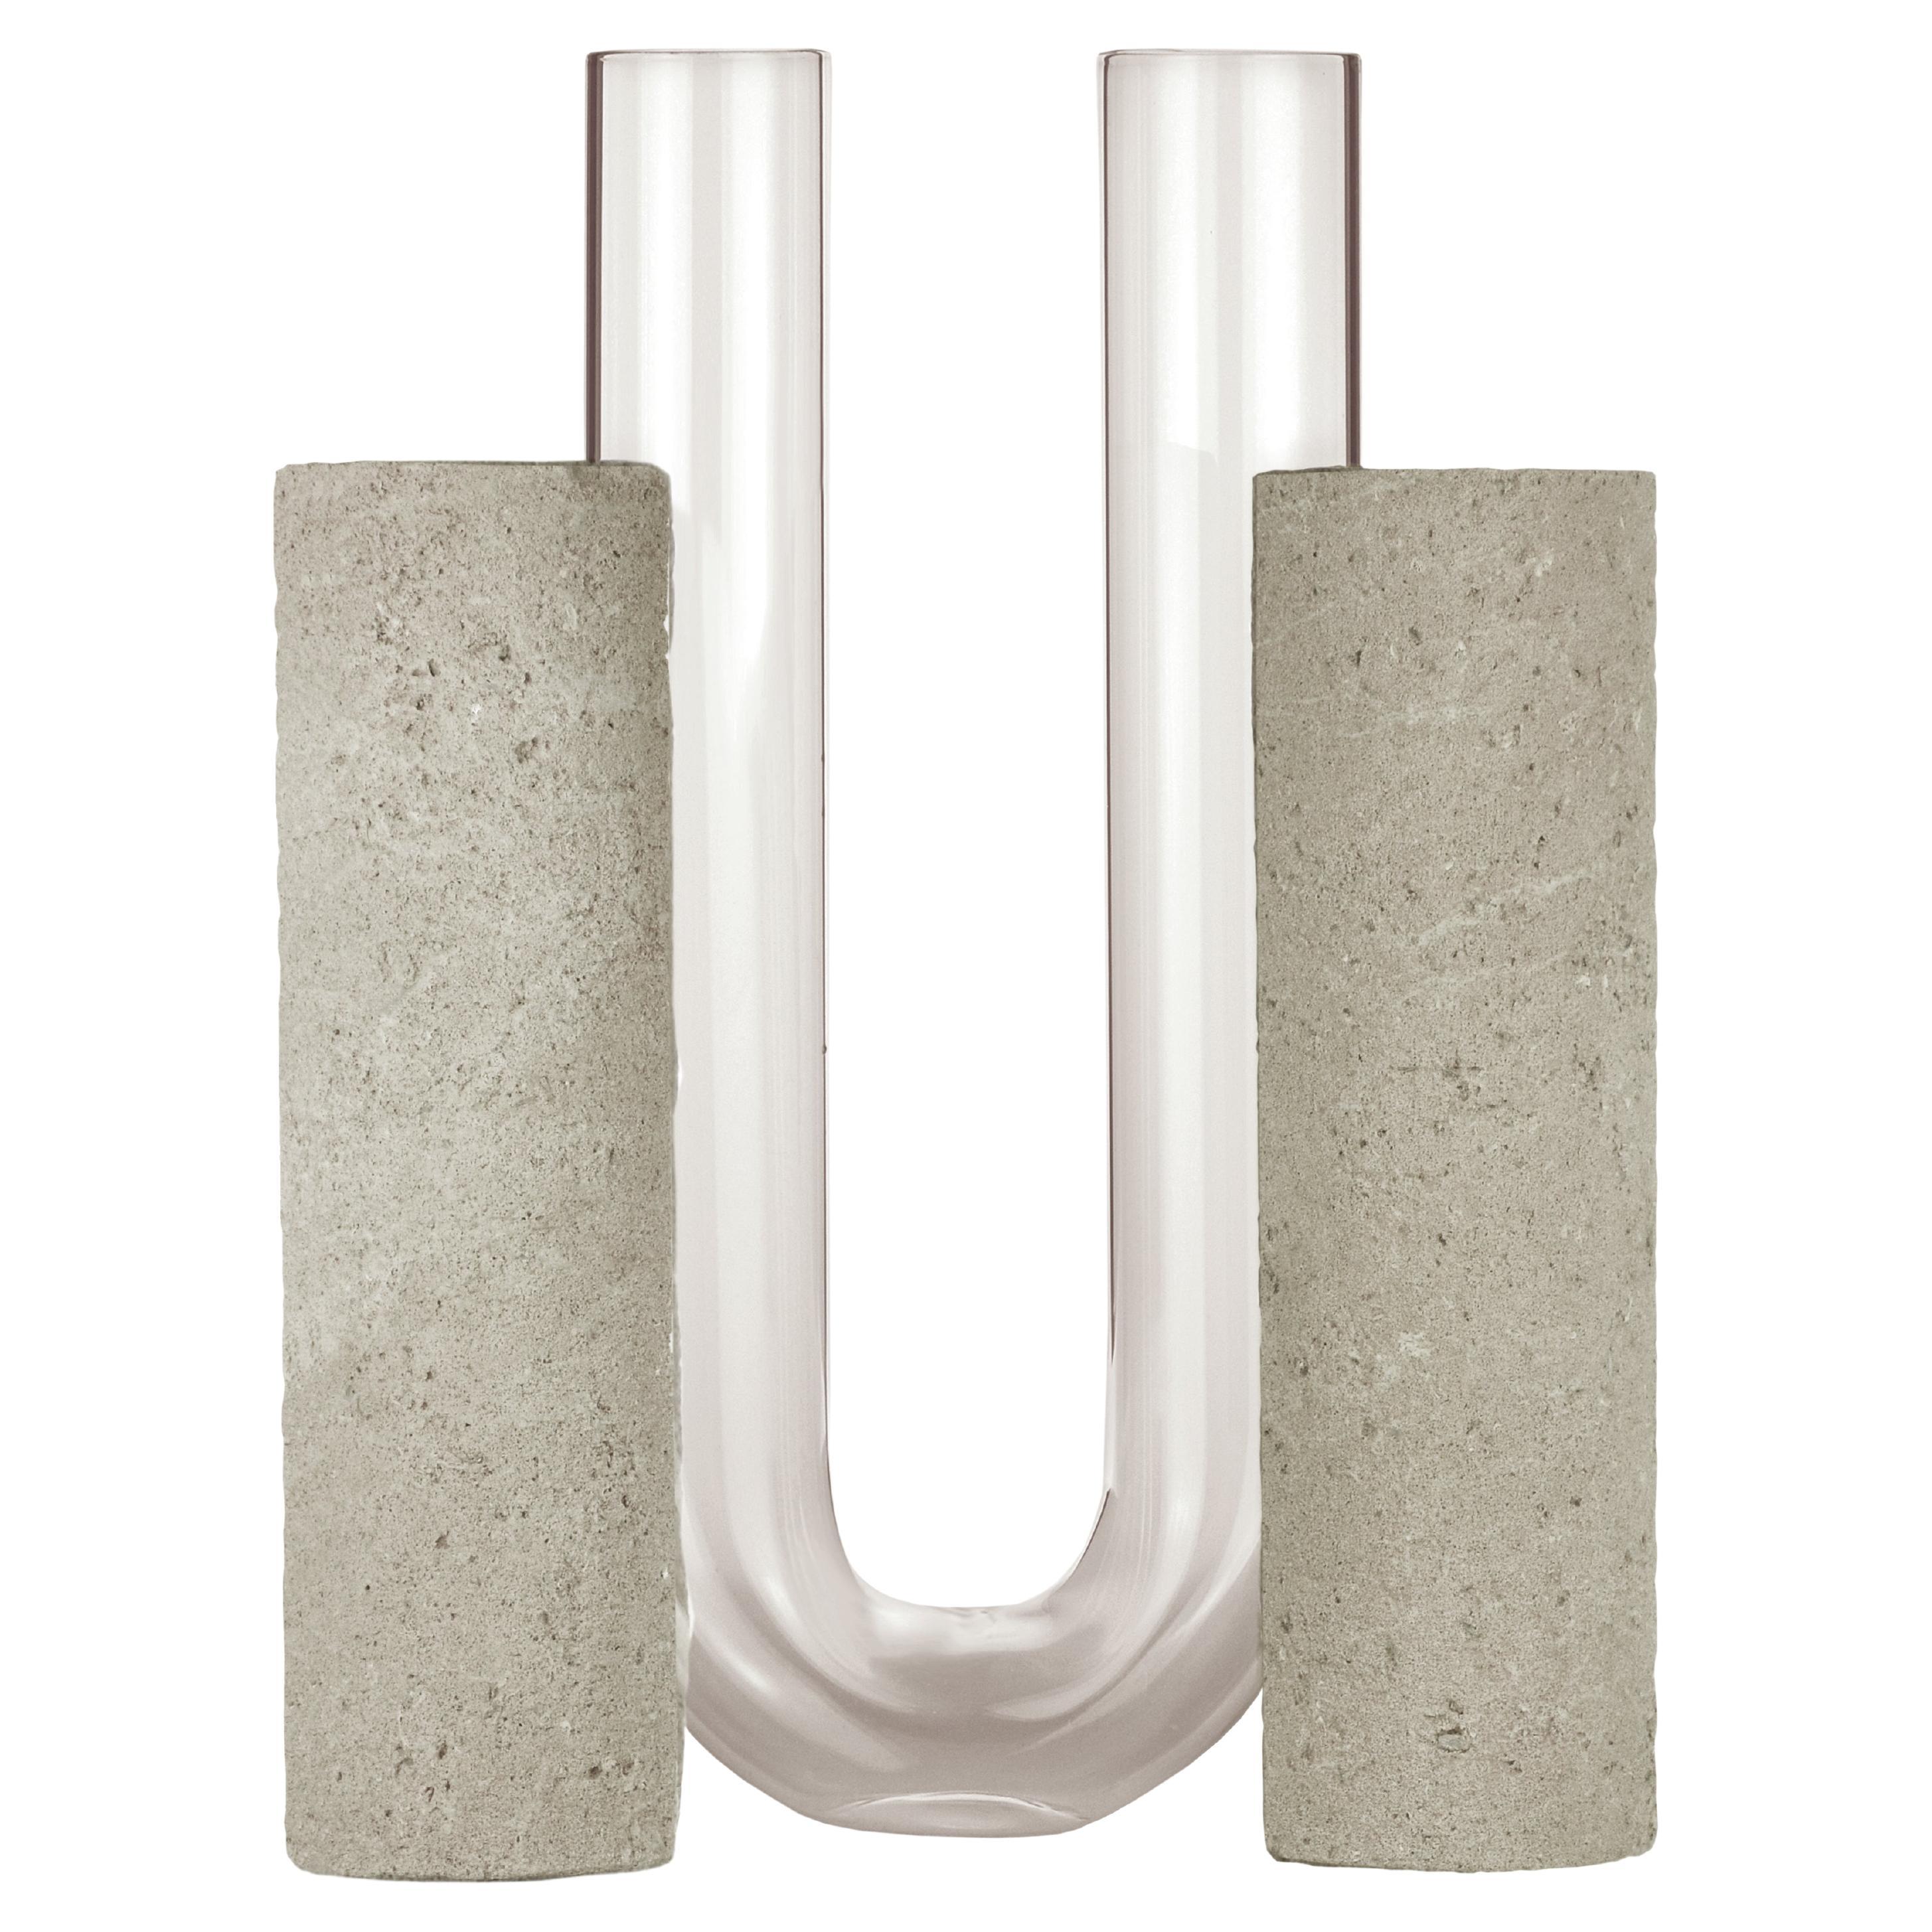 Grey-Smoked Cochlea Dello Sviluppo Soils Edition Vase by Coki Barbieri For Sale